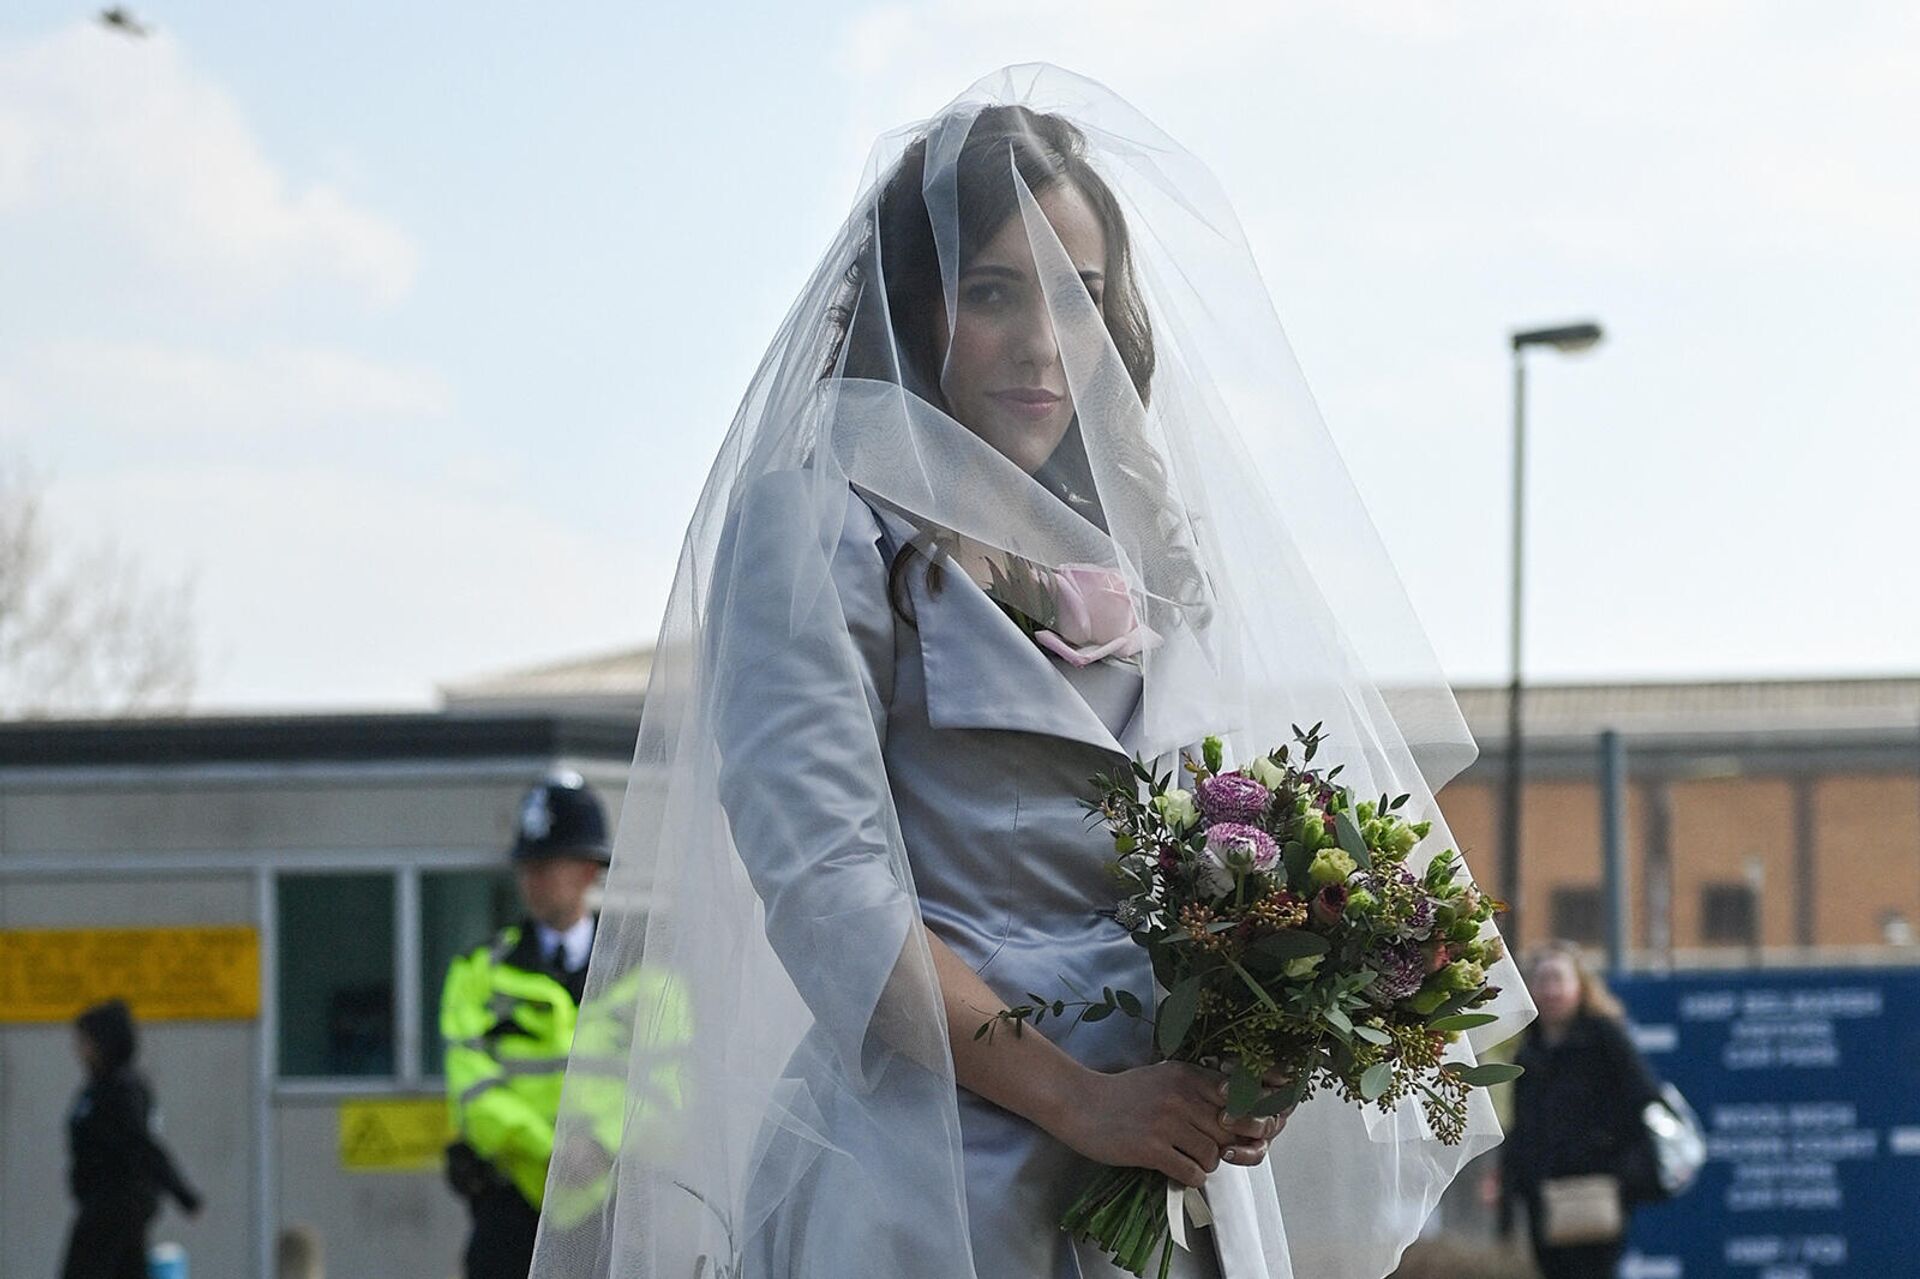 Стелла Морис, невеста основателя WikiLeaks Джулиана Ассанжа в своем свадебном платье по прибытии в тюрьму Белмарш, где она должна выйти замуж за Джулиана Ассанжа (23 марта 2022). Лондон - Sputnik Արմենիա, 1920, 23.03.2022